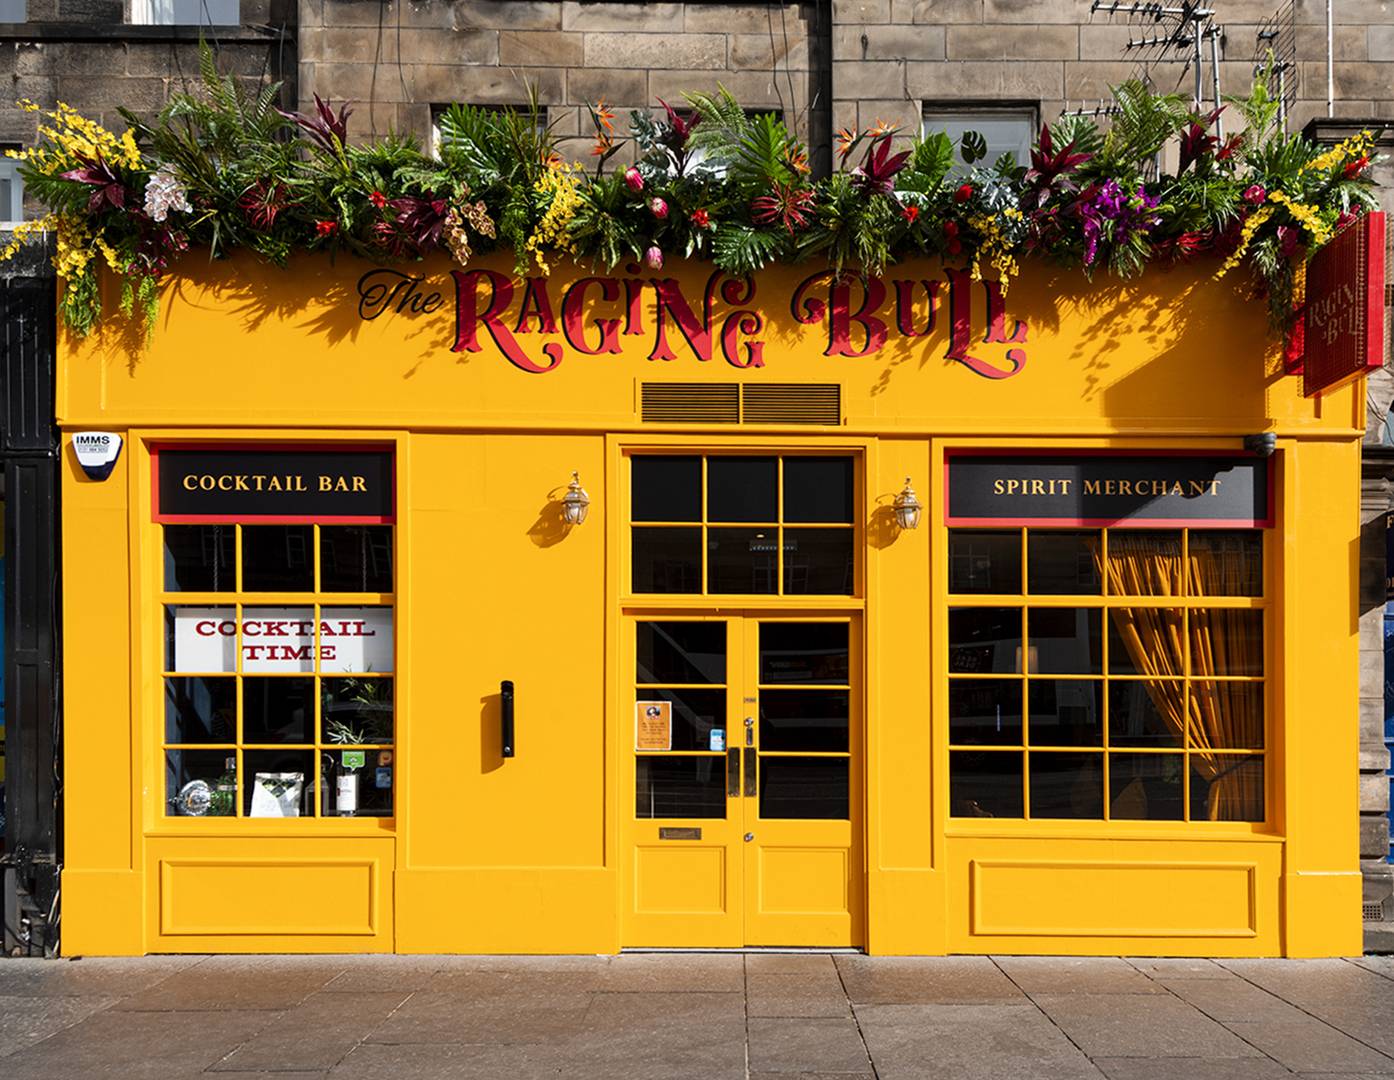 The exterior of The Raging Bull bar, The Raging Bull, Edinburgh